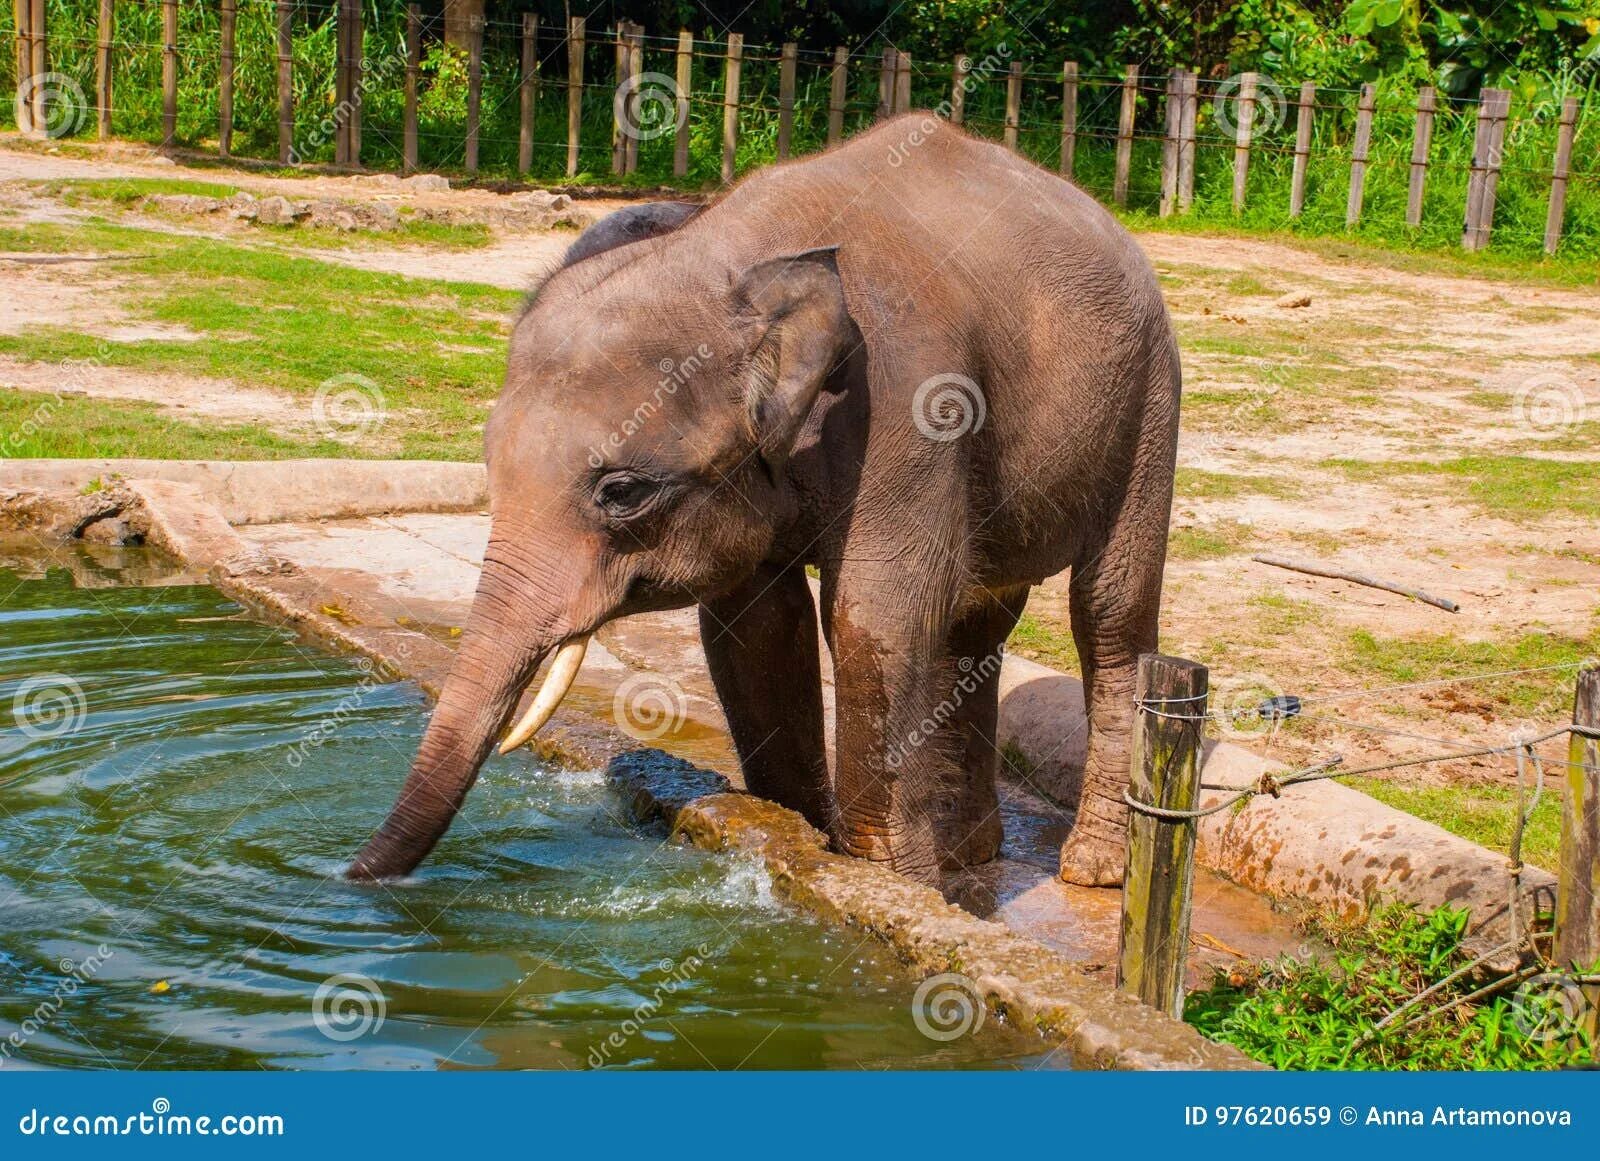 Слон пьющий воду. Слон пьет воду. Слоненок пьет воду. Слон пьет зоопарк.